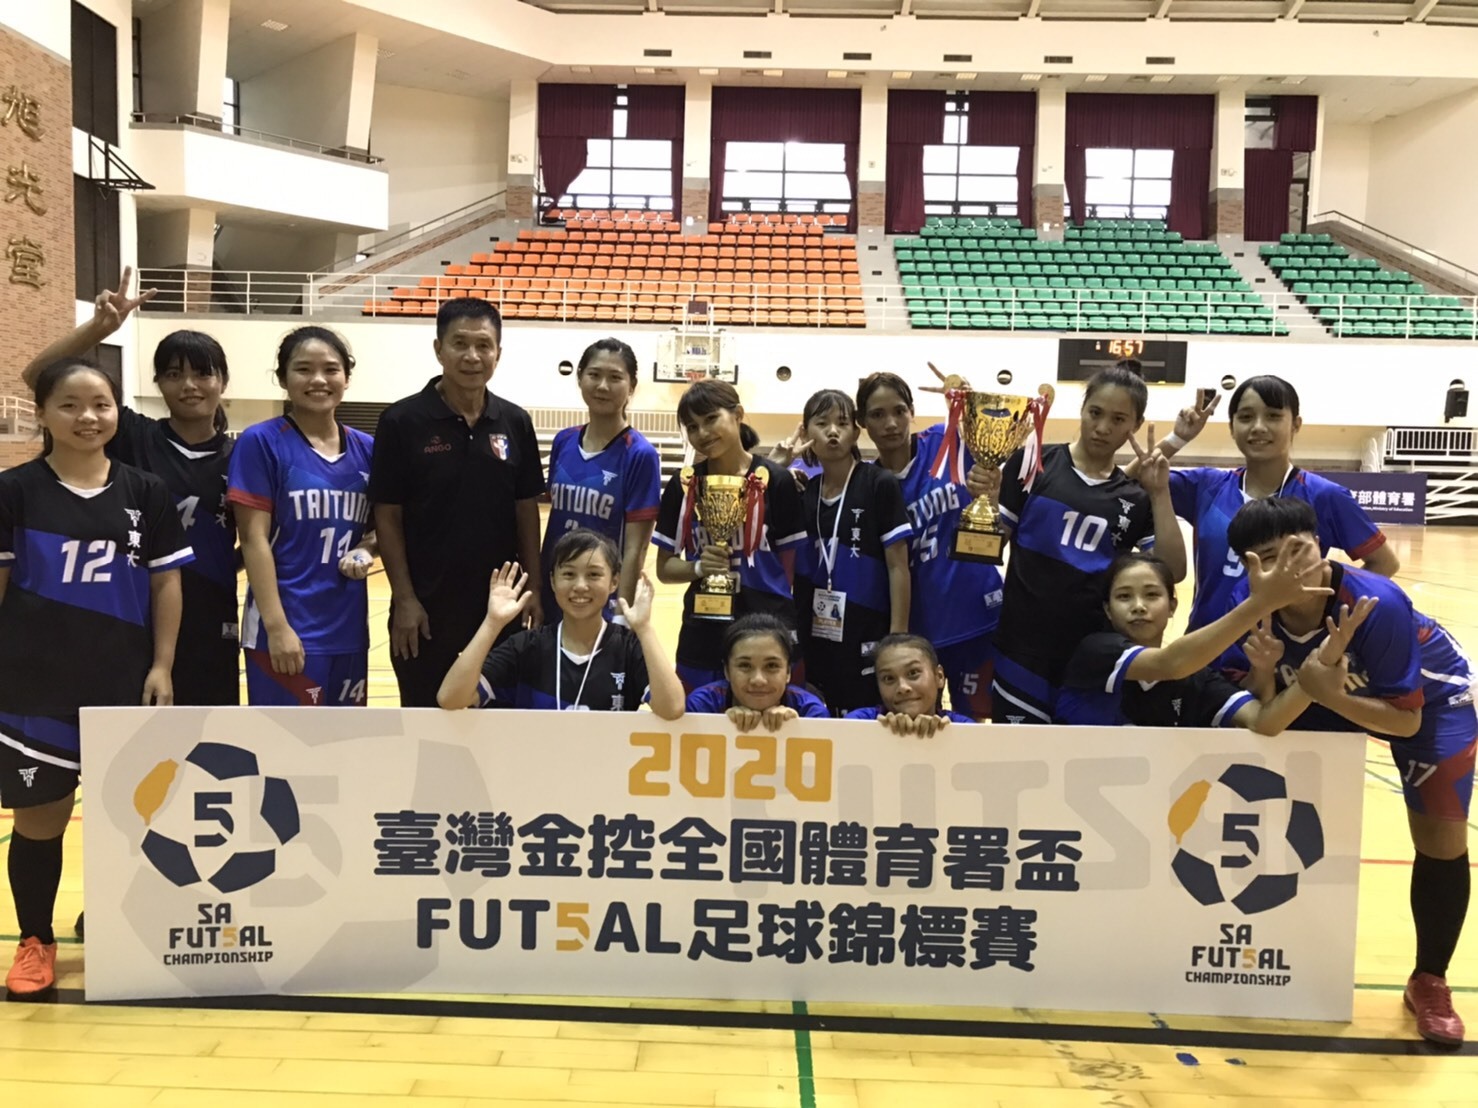 本校女足隊參加2020全國體育署盃社會女子組  榮獲冠軍